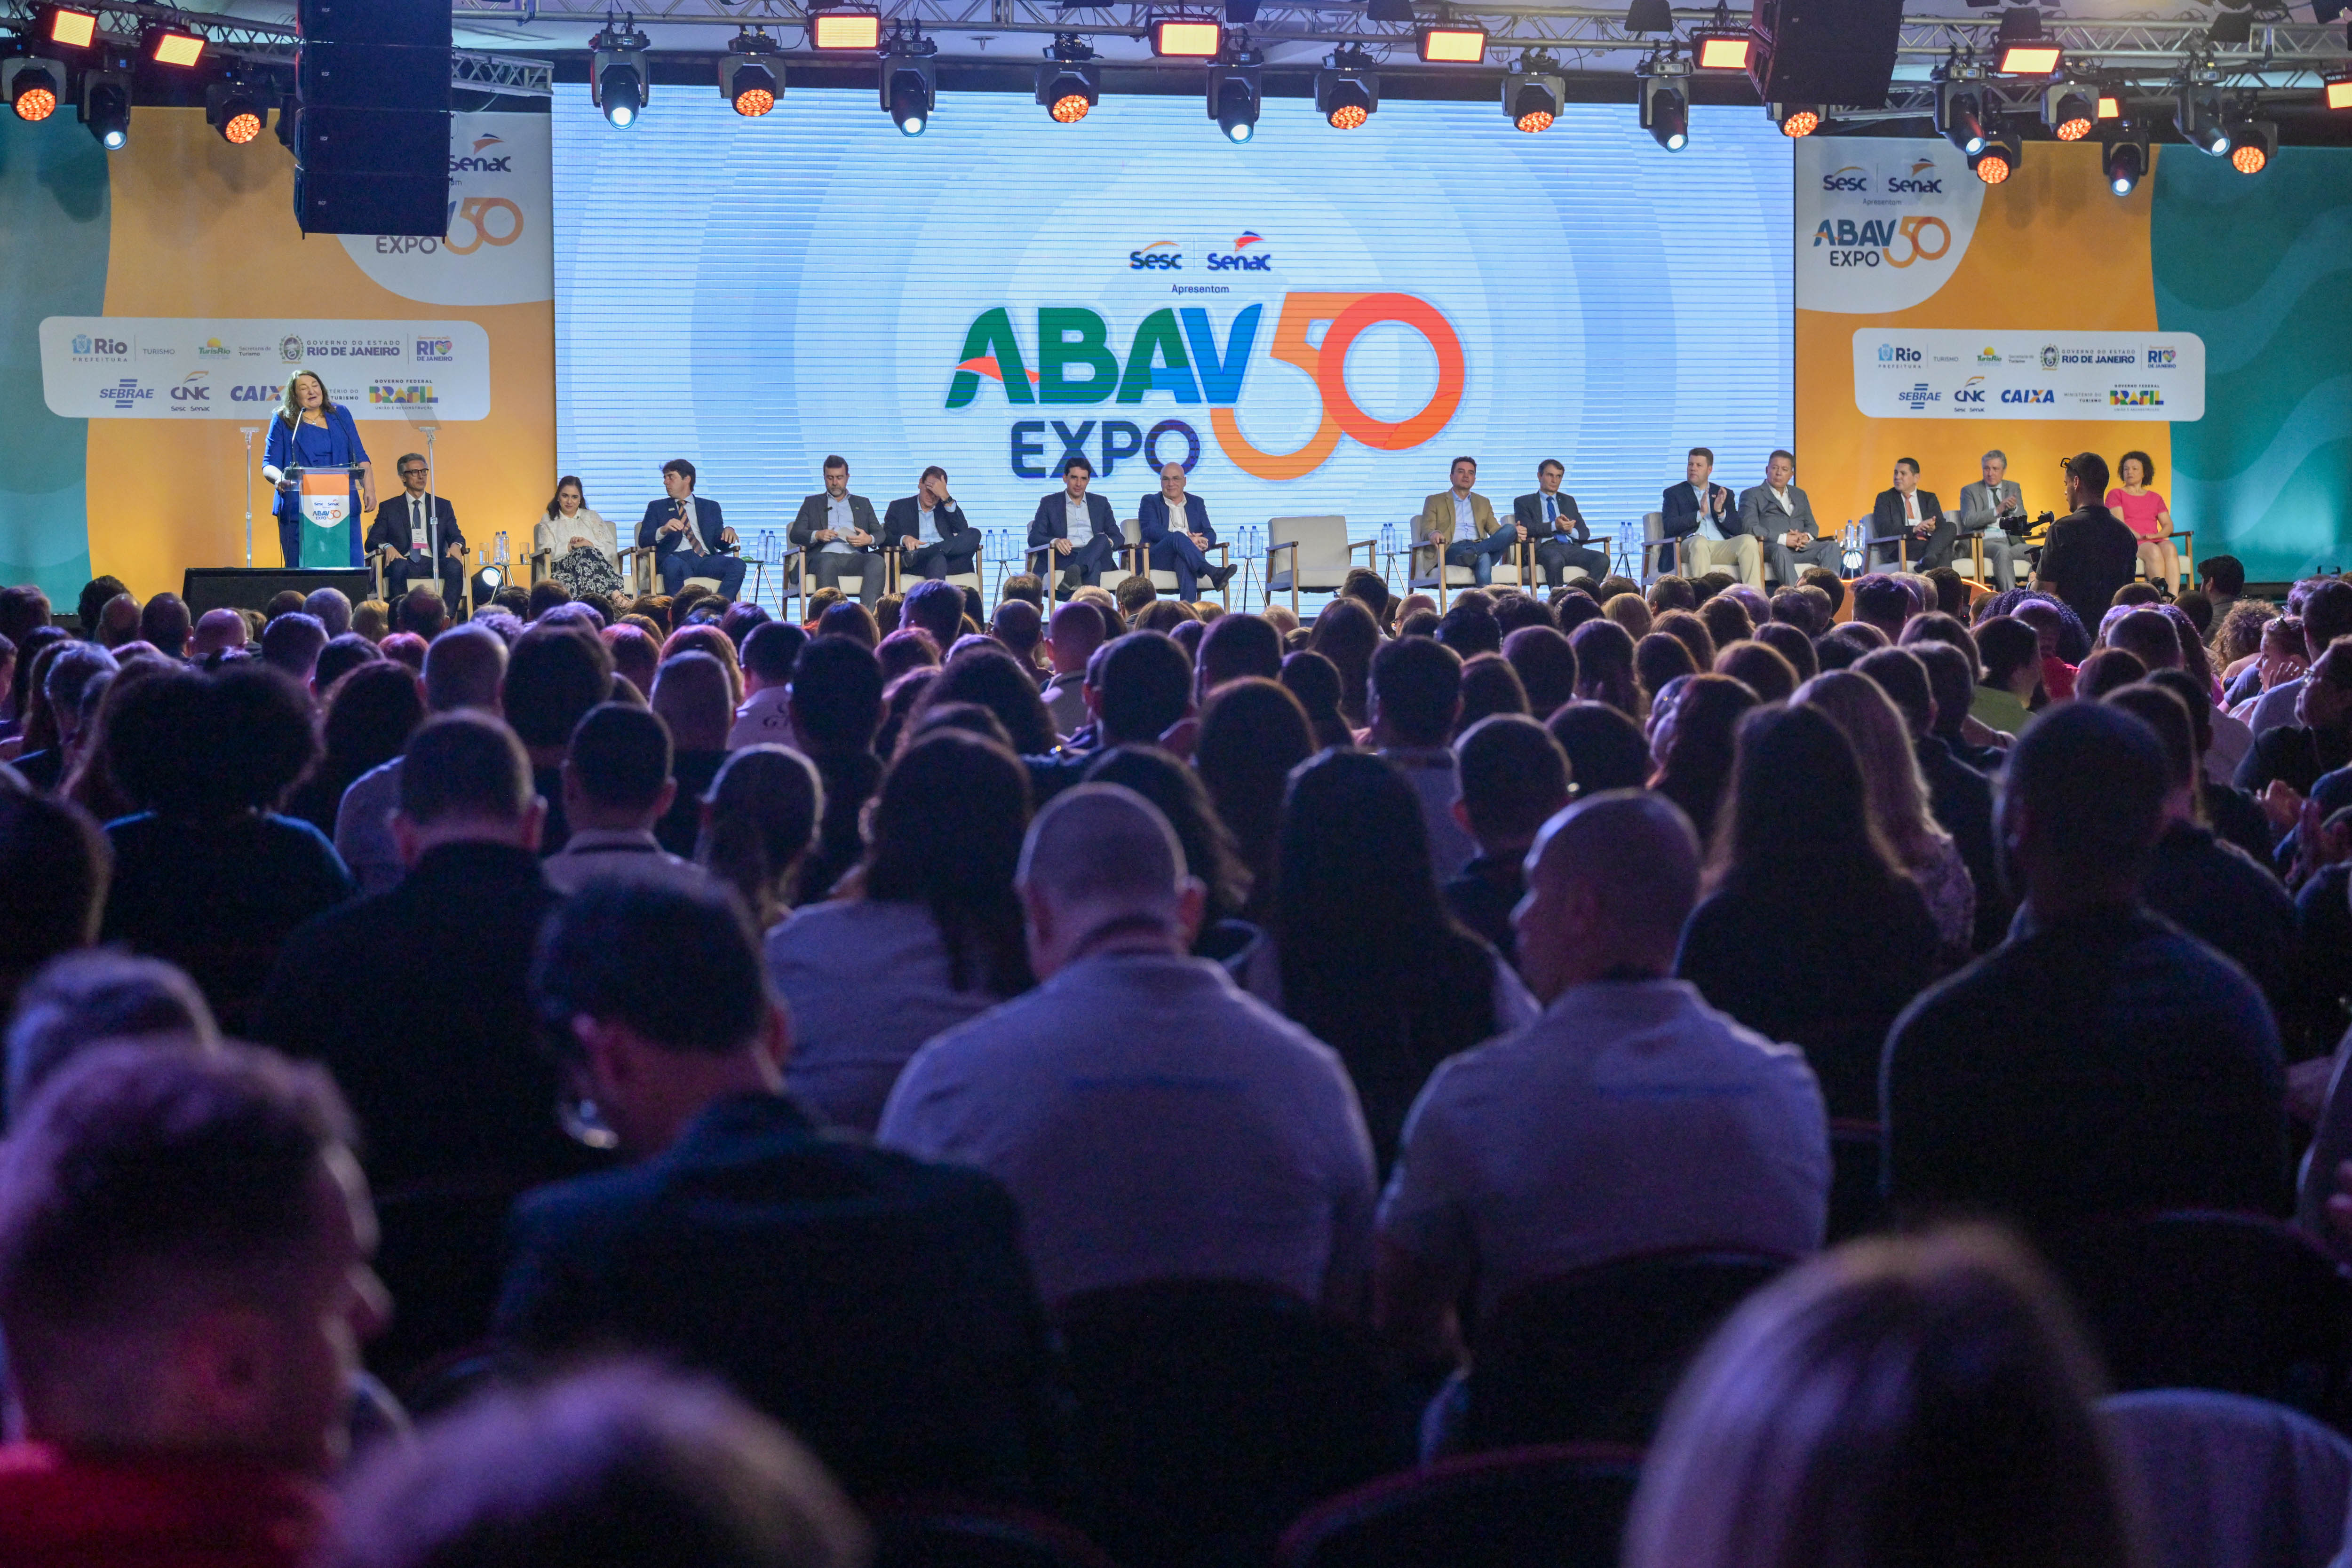 Governo de Santa Catarina participa da ABAV Expo no Rio de Janeiro com estande da Secretaria de Estado do Turismo